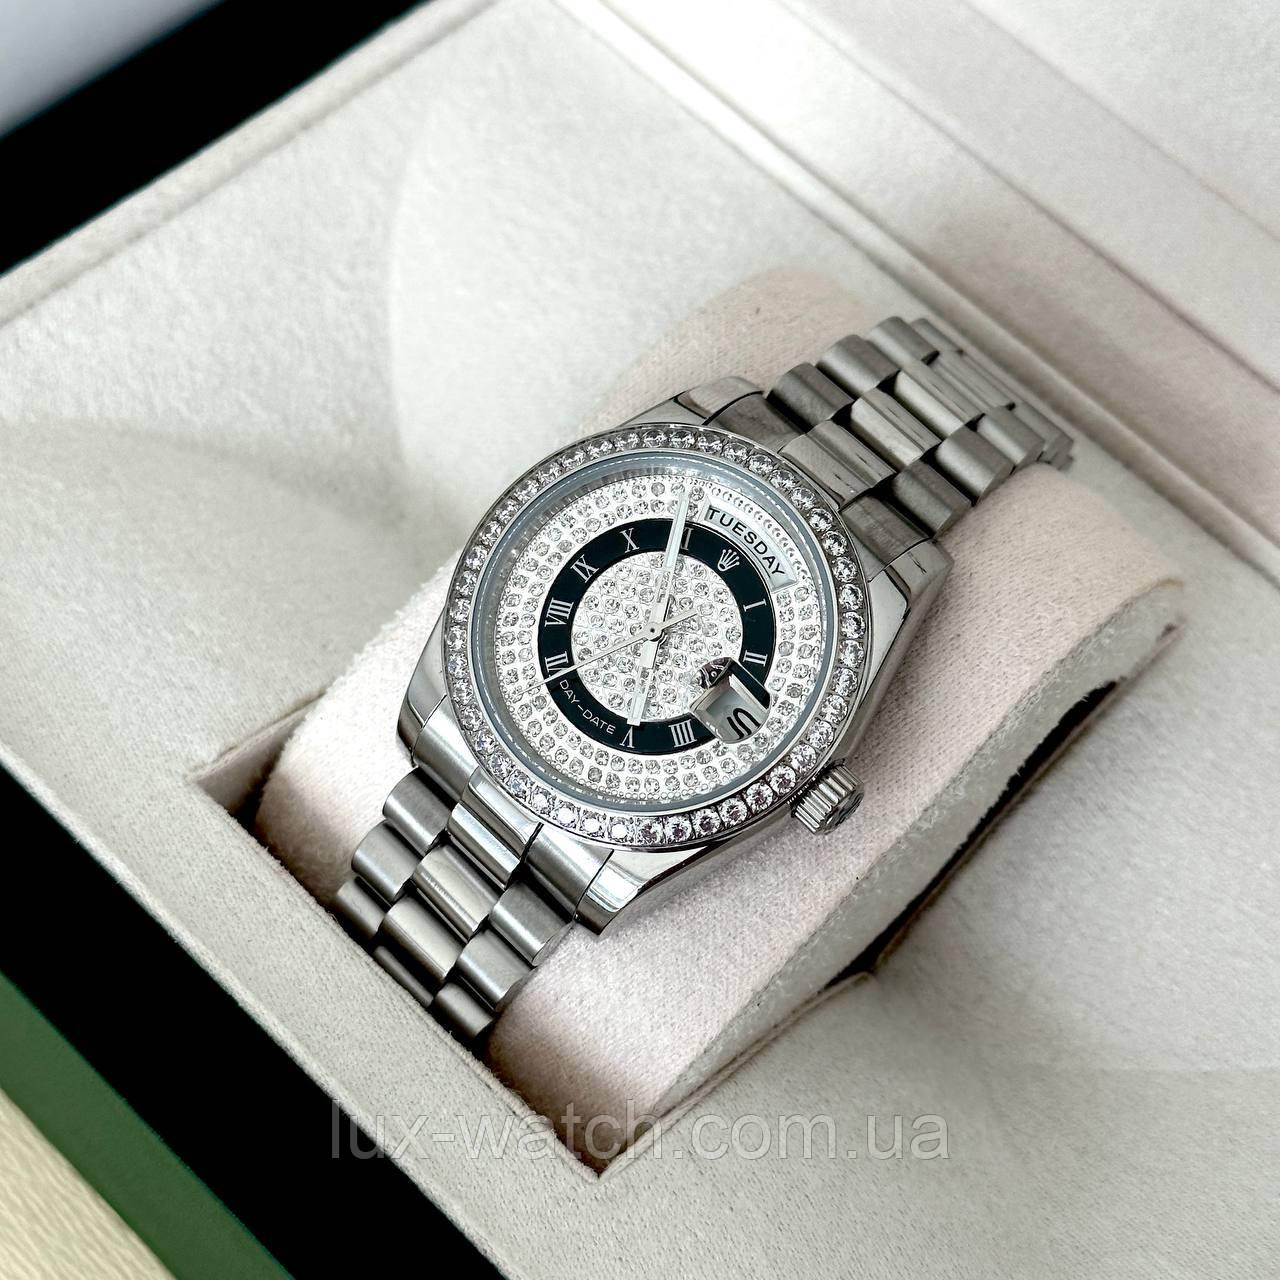 Годинник наручний Rolex 36 mm Day — Date Black Silver Diamon преміального ААА класу